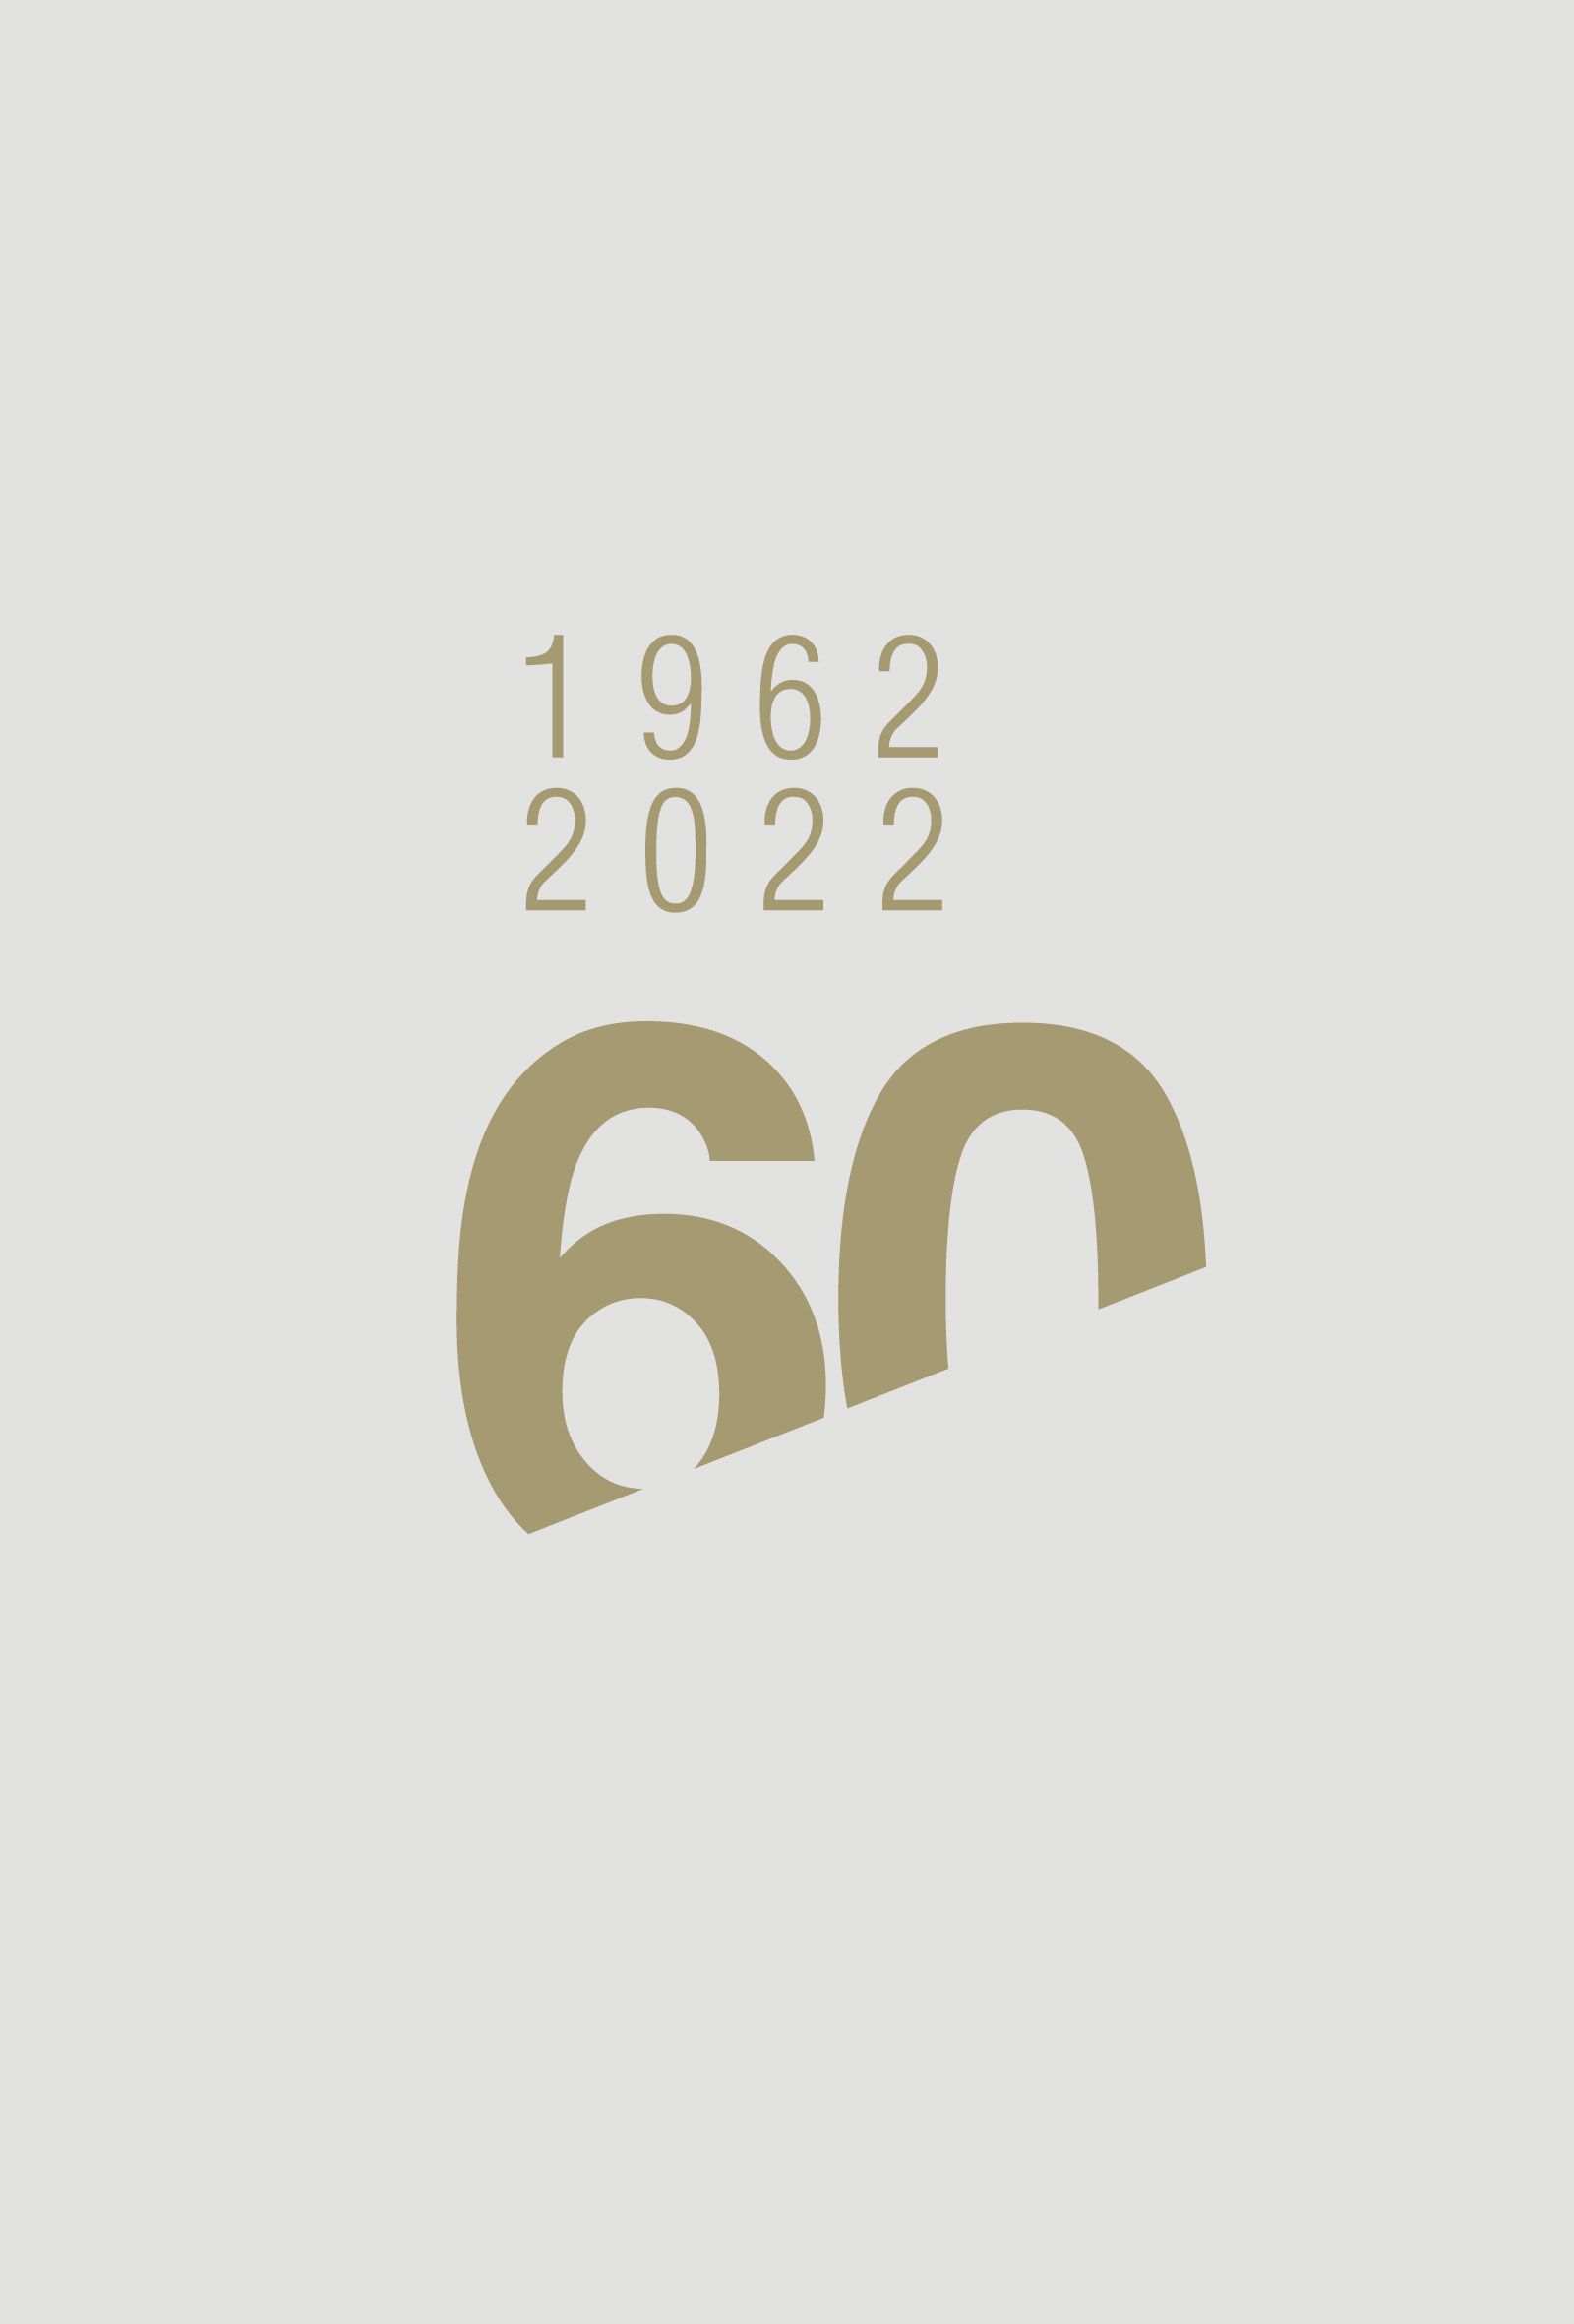 progetto grafico per logo anniversario aziendale impresa edile, in colore oro e grigio.